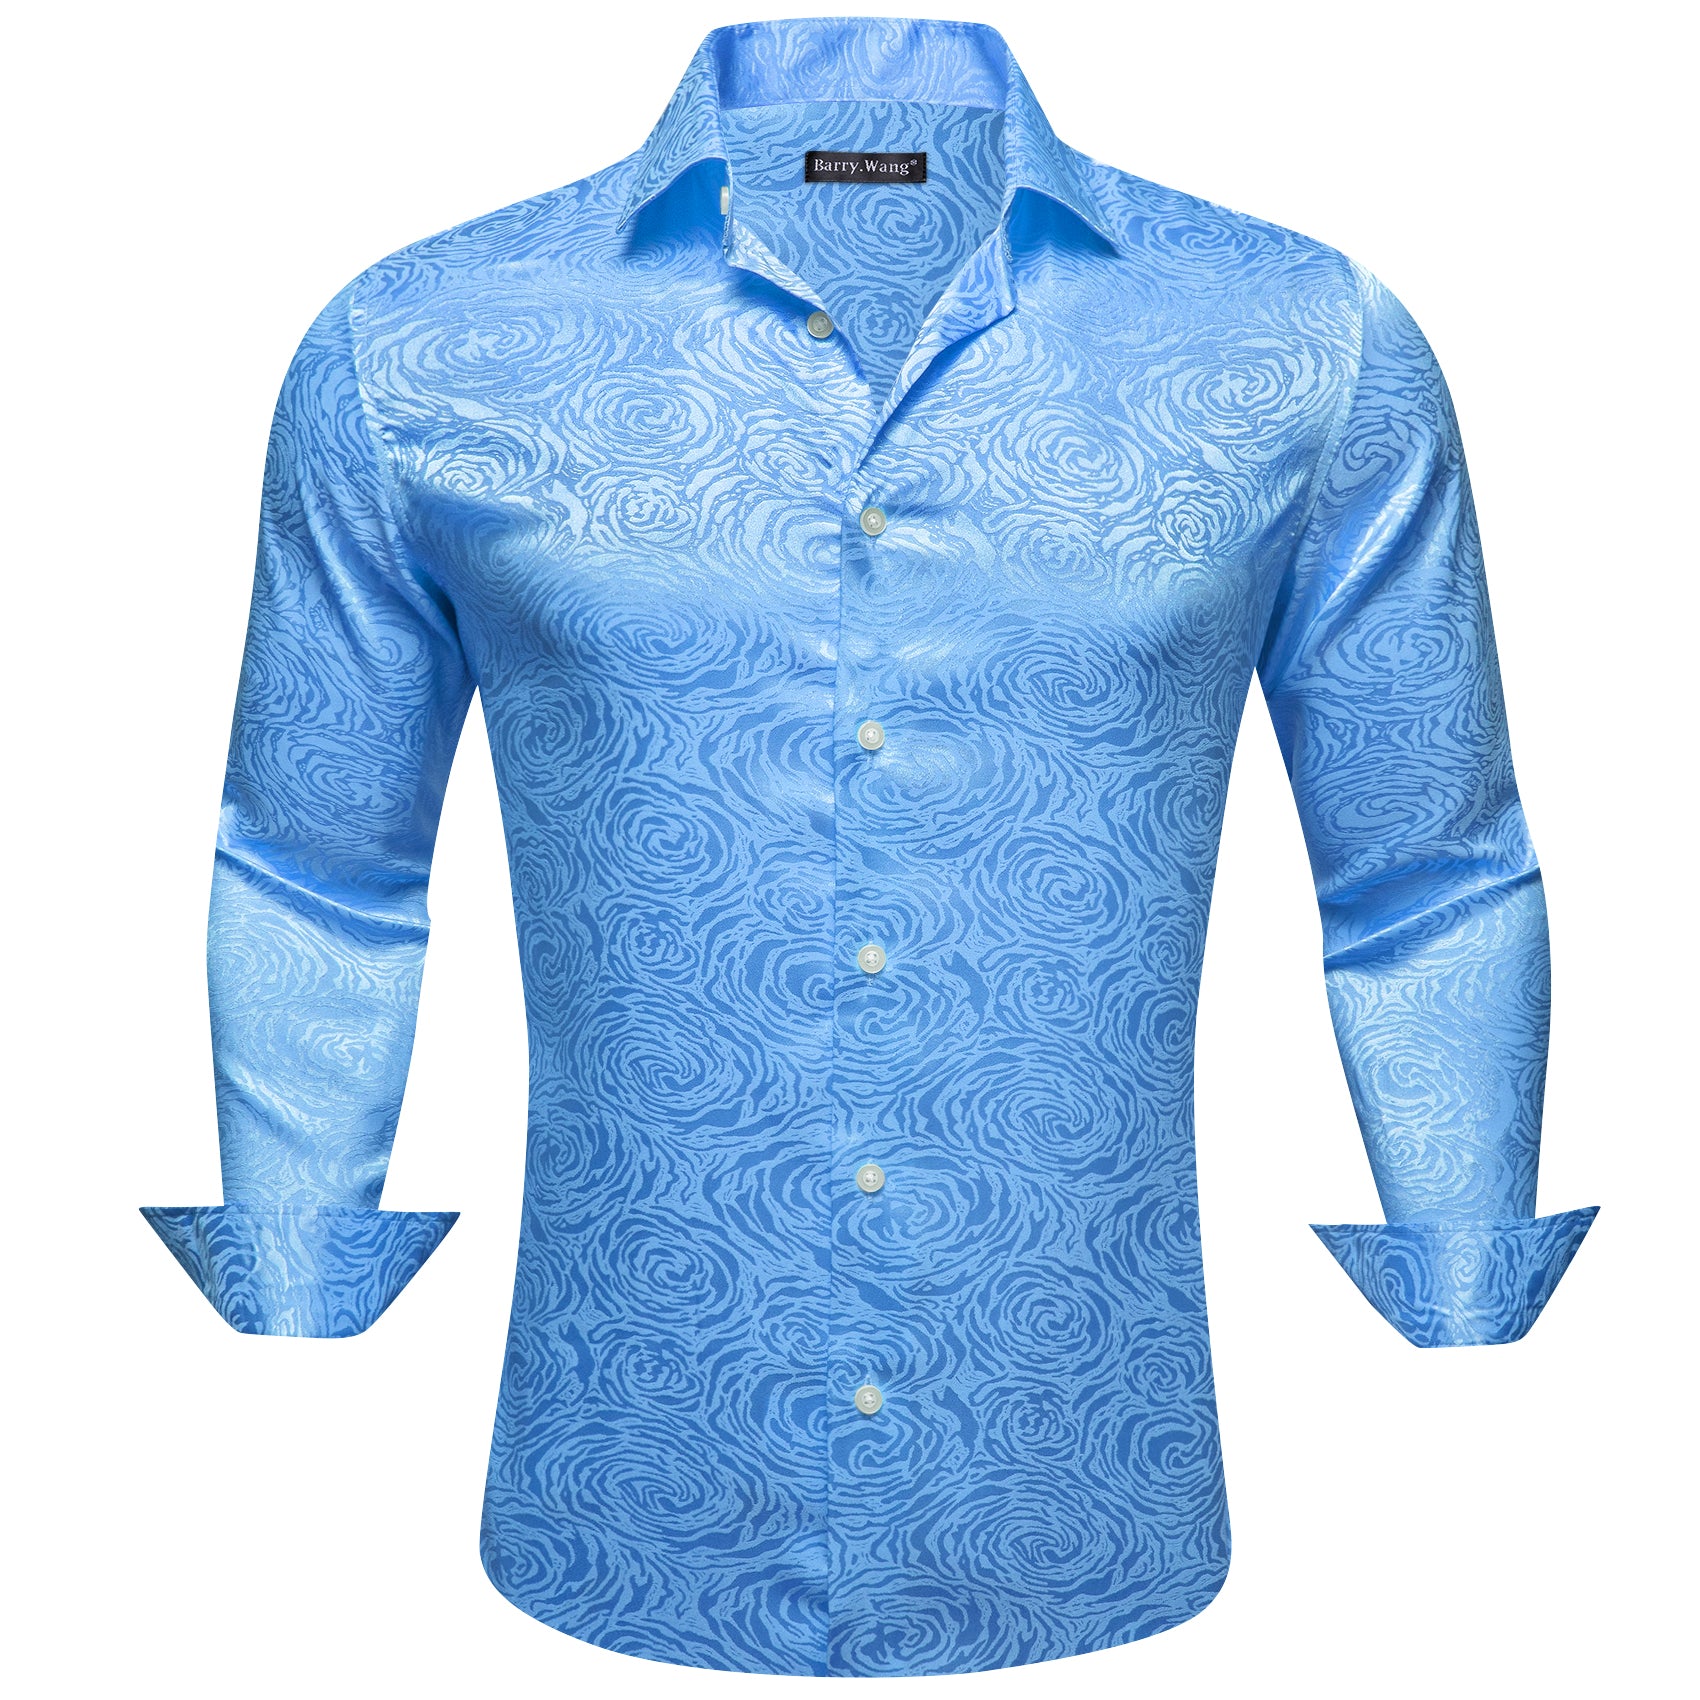 Barry.wang Sky Blue Floral Silk Men's Shirt